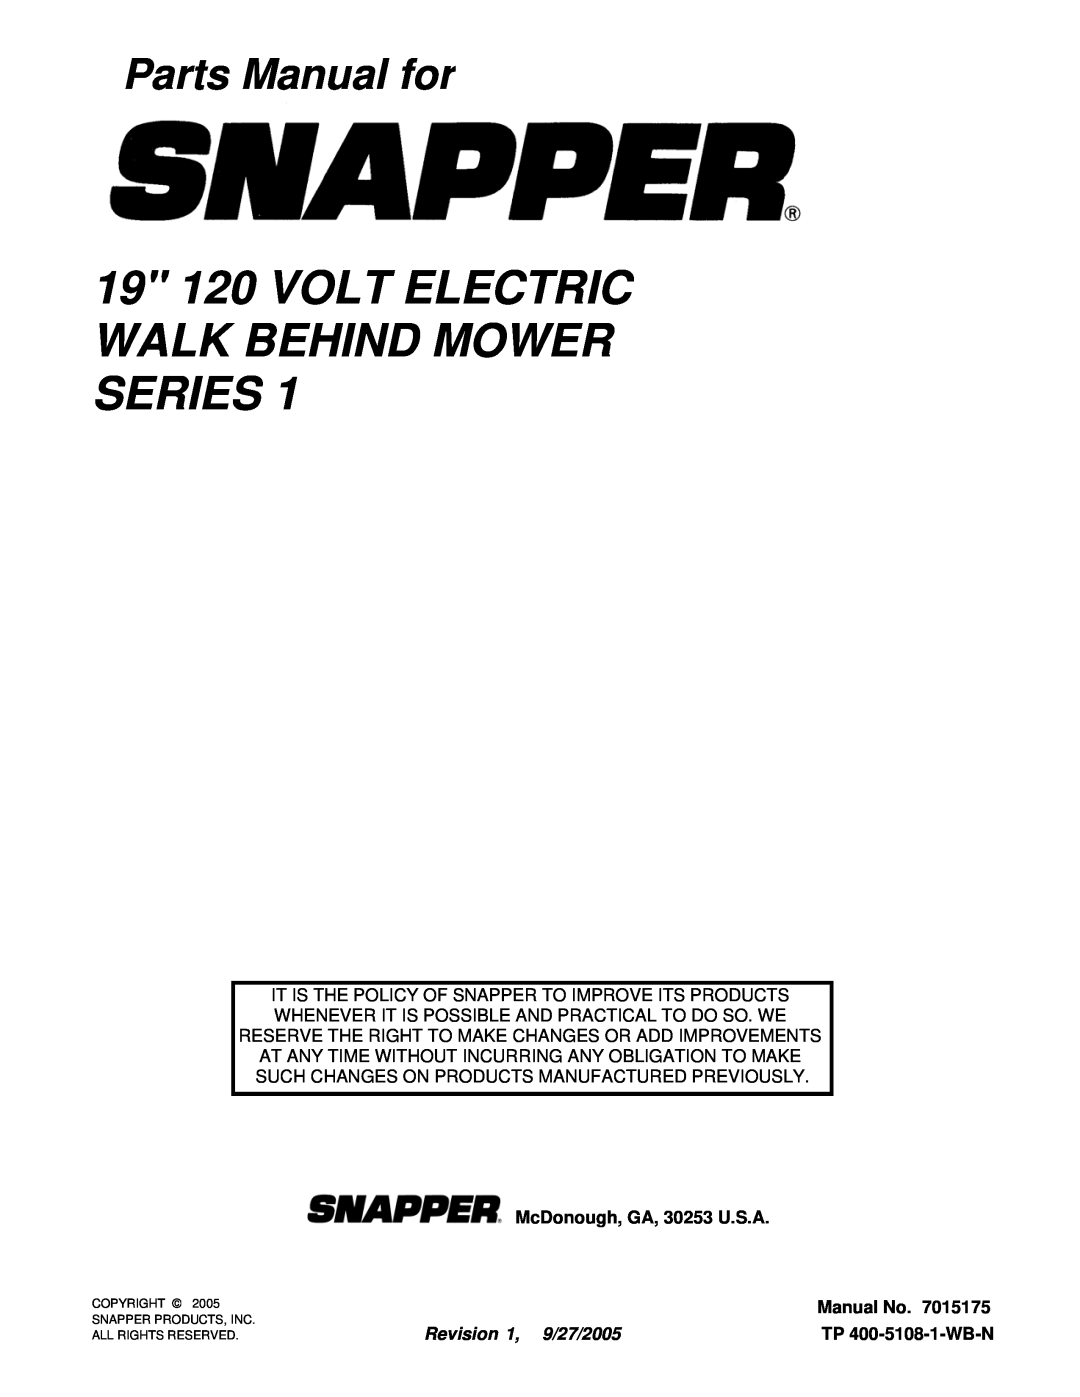 Snapper 19E05B 19 120 VOLT ELECTRIC WALK BEHIND MOWER SERIES, Parts Manual for, McDonough, GA, 30253 U.S.A, Manual No 